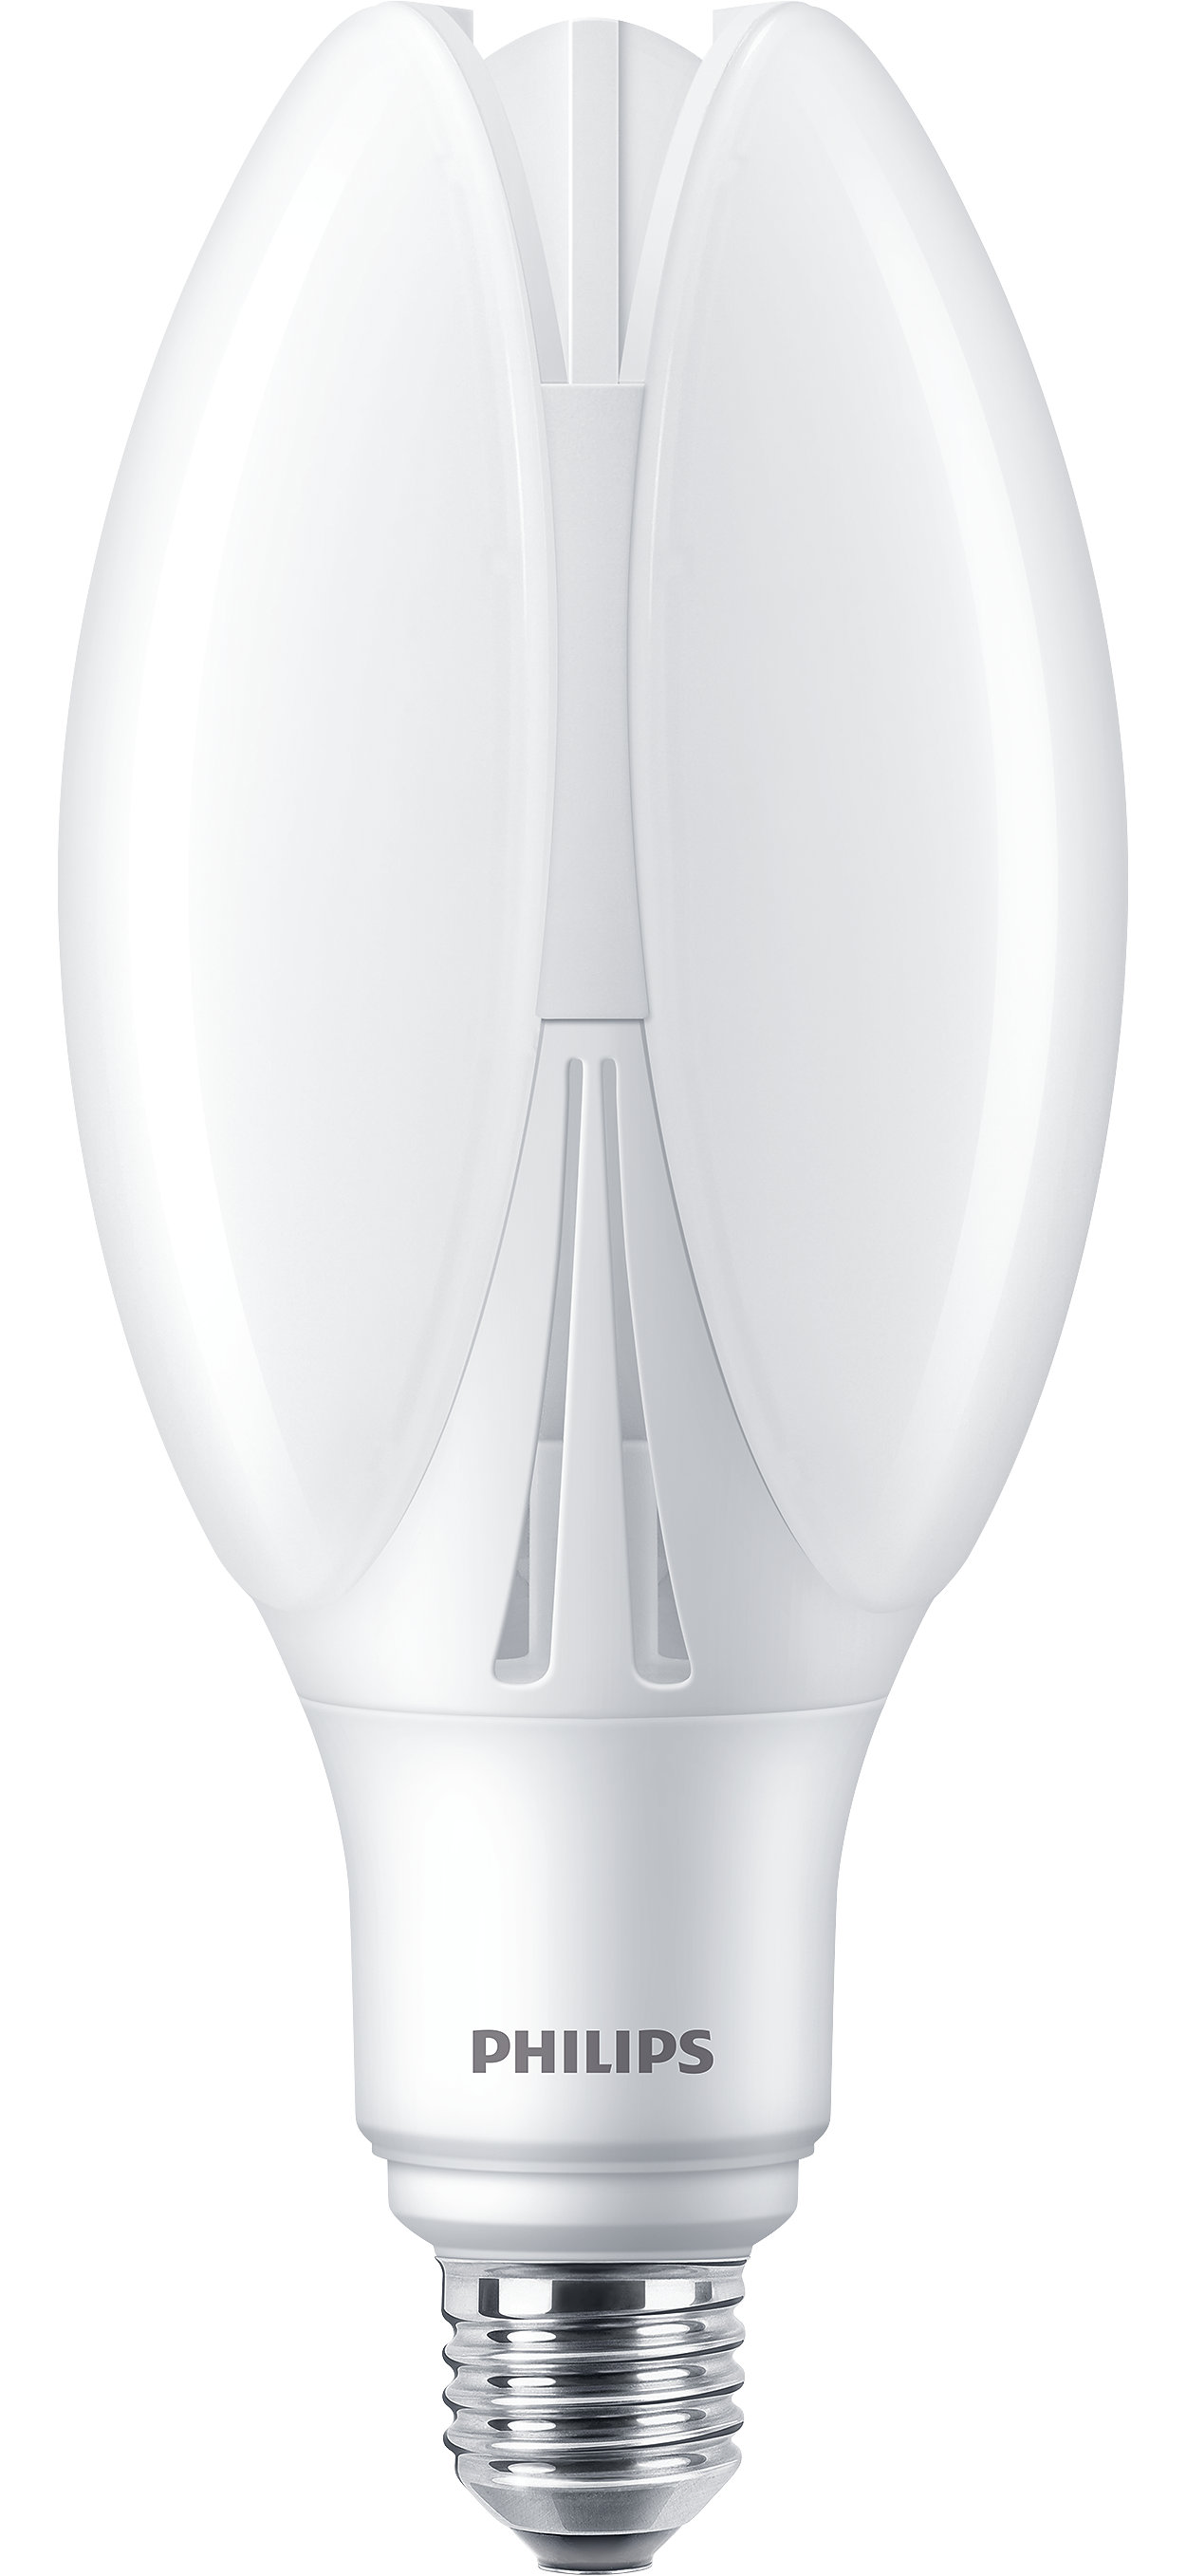 La meilleure solution LED pour le remplacement des lampes à décharge haute intensité (HID, High-Intensity Discharge)